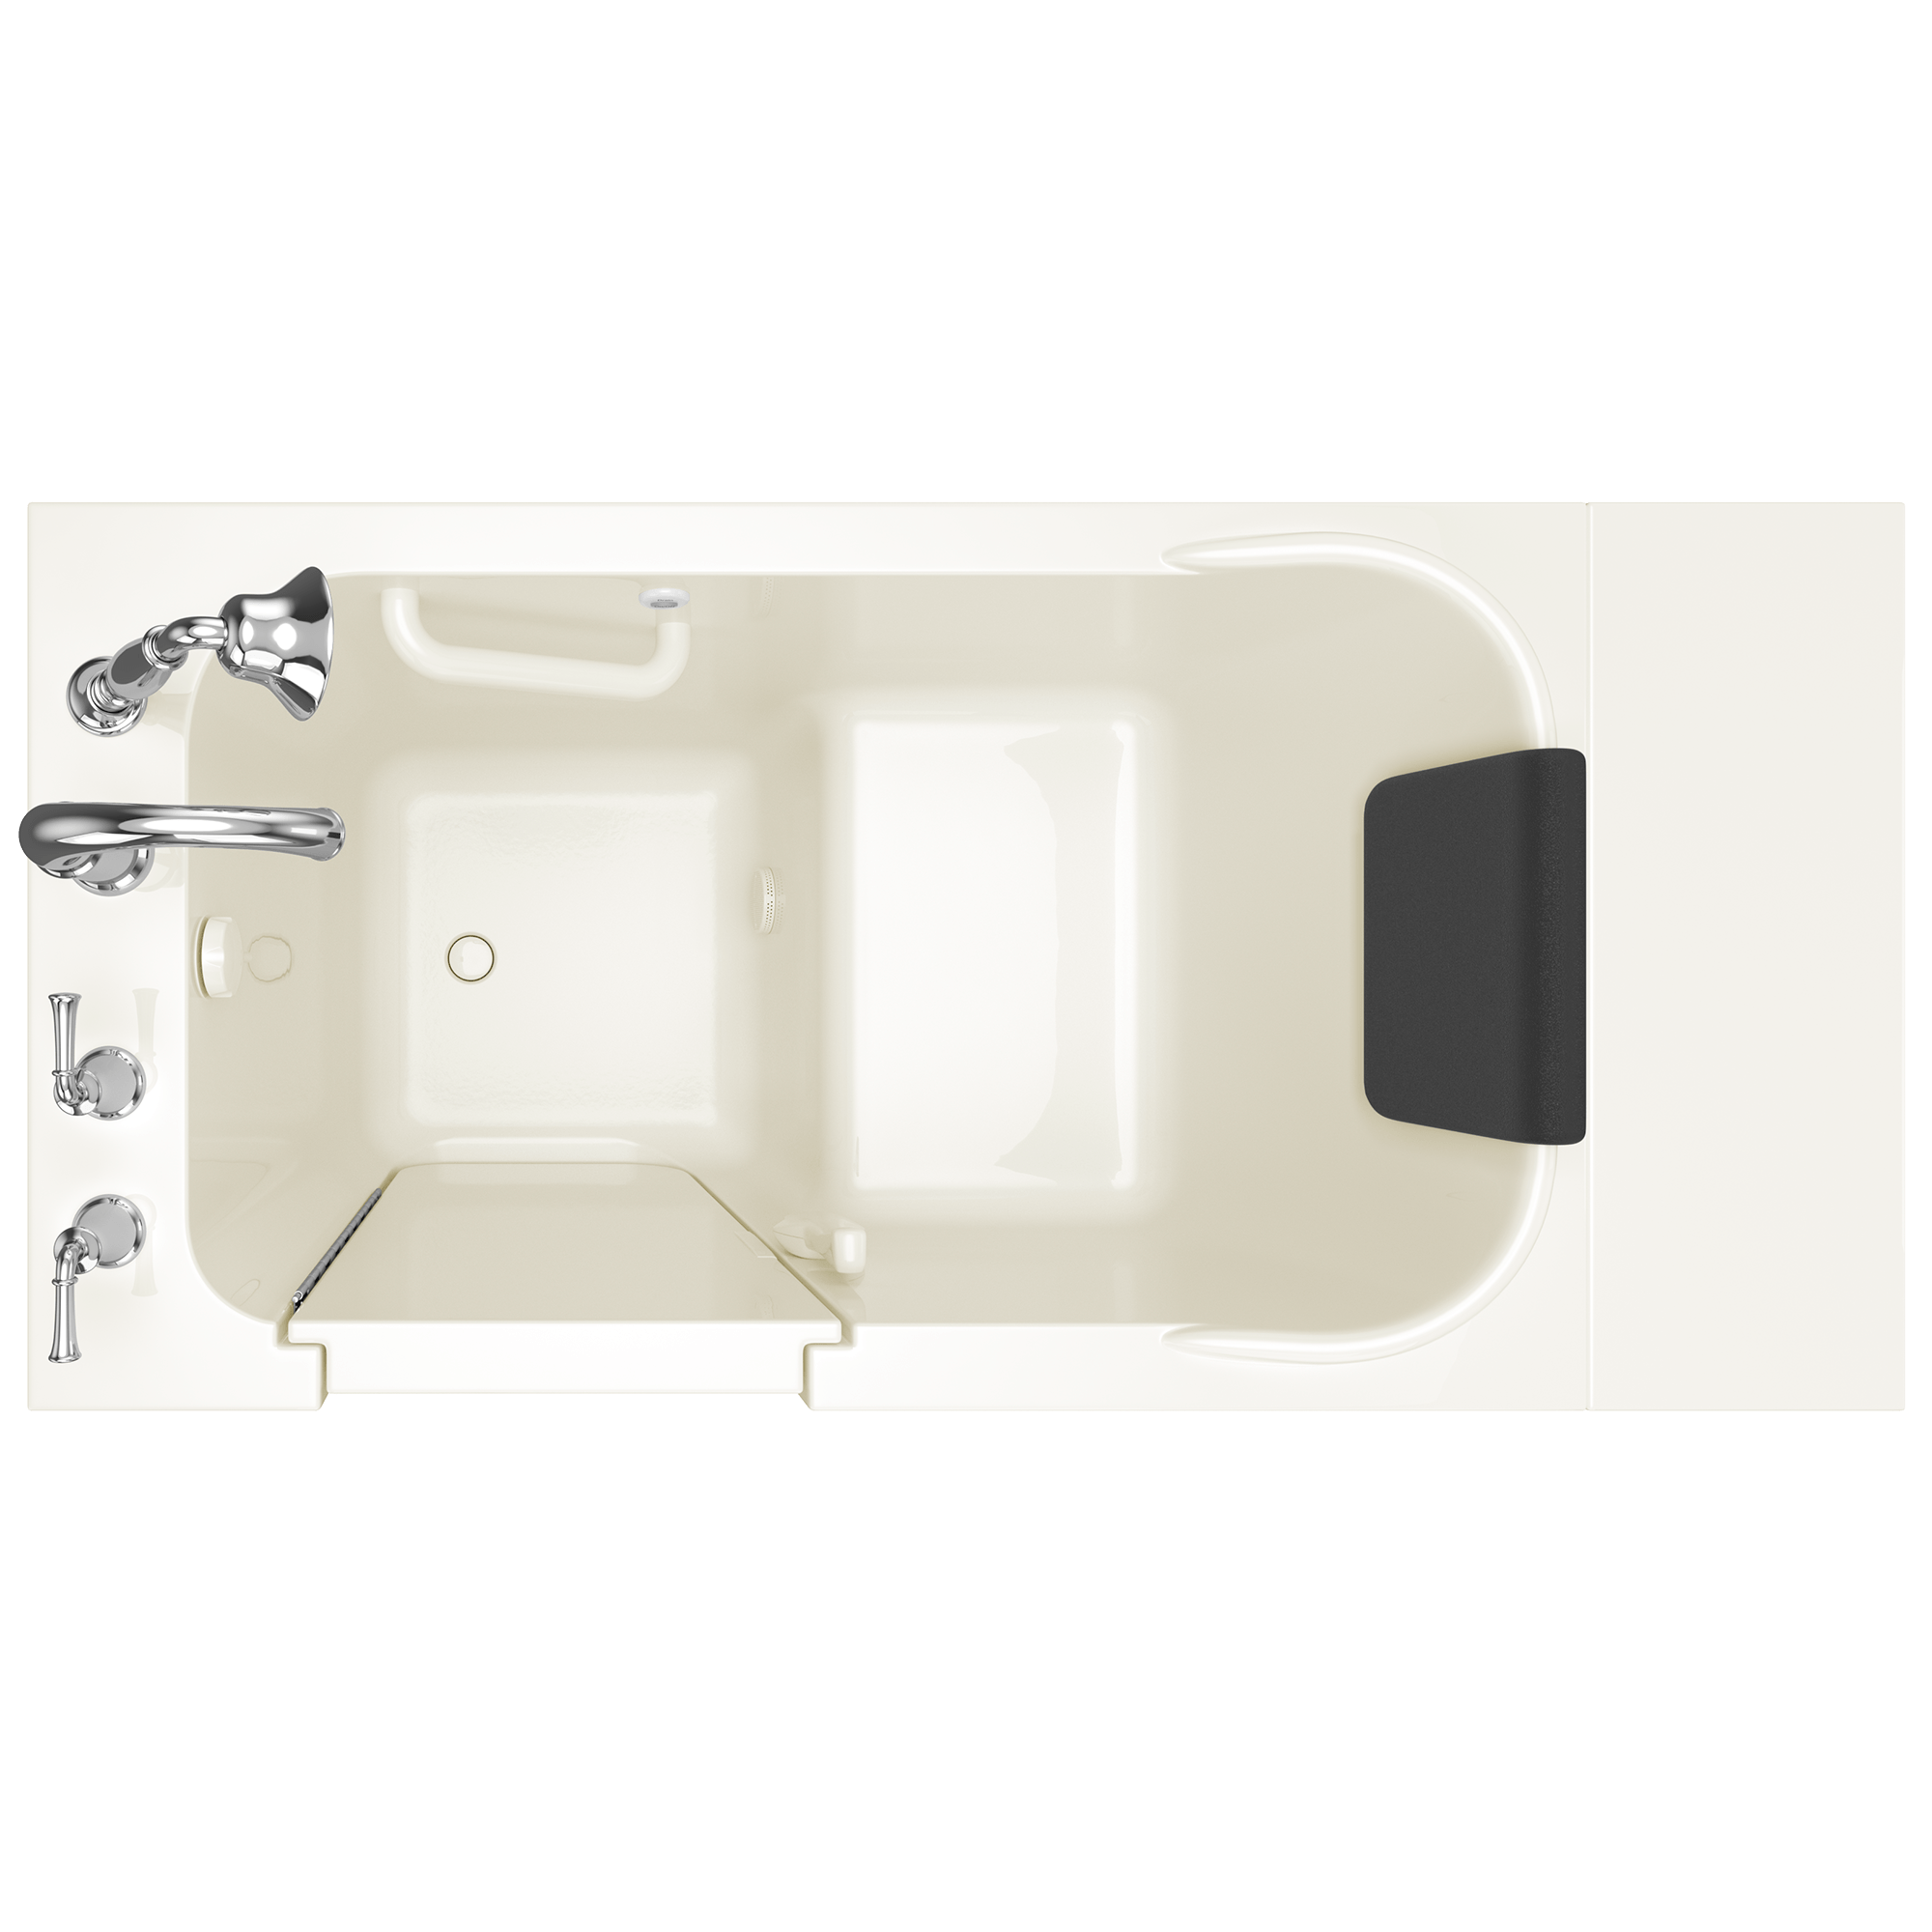 Gelcoat Premium Series 48x28 Inch Soaking Walk-In Bathtub - Left Hand Door and Drain